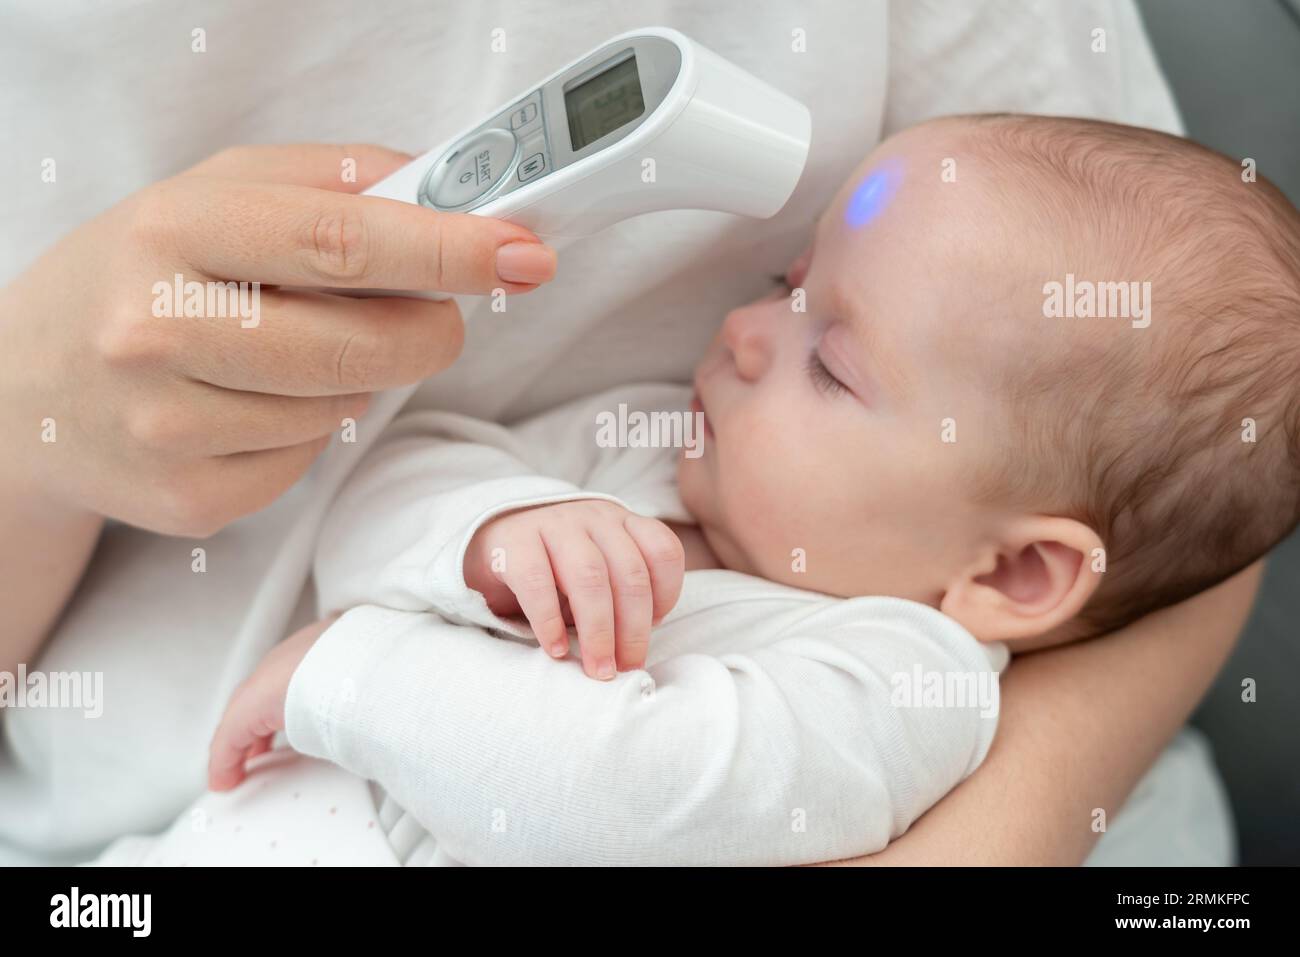 La mujer asegura el bienestar del bebé con tecnología. Concepto de